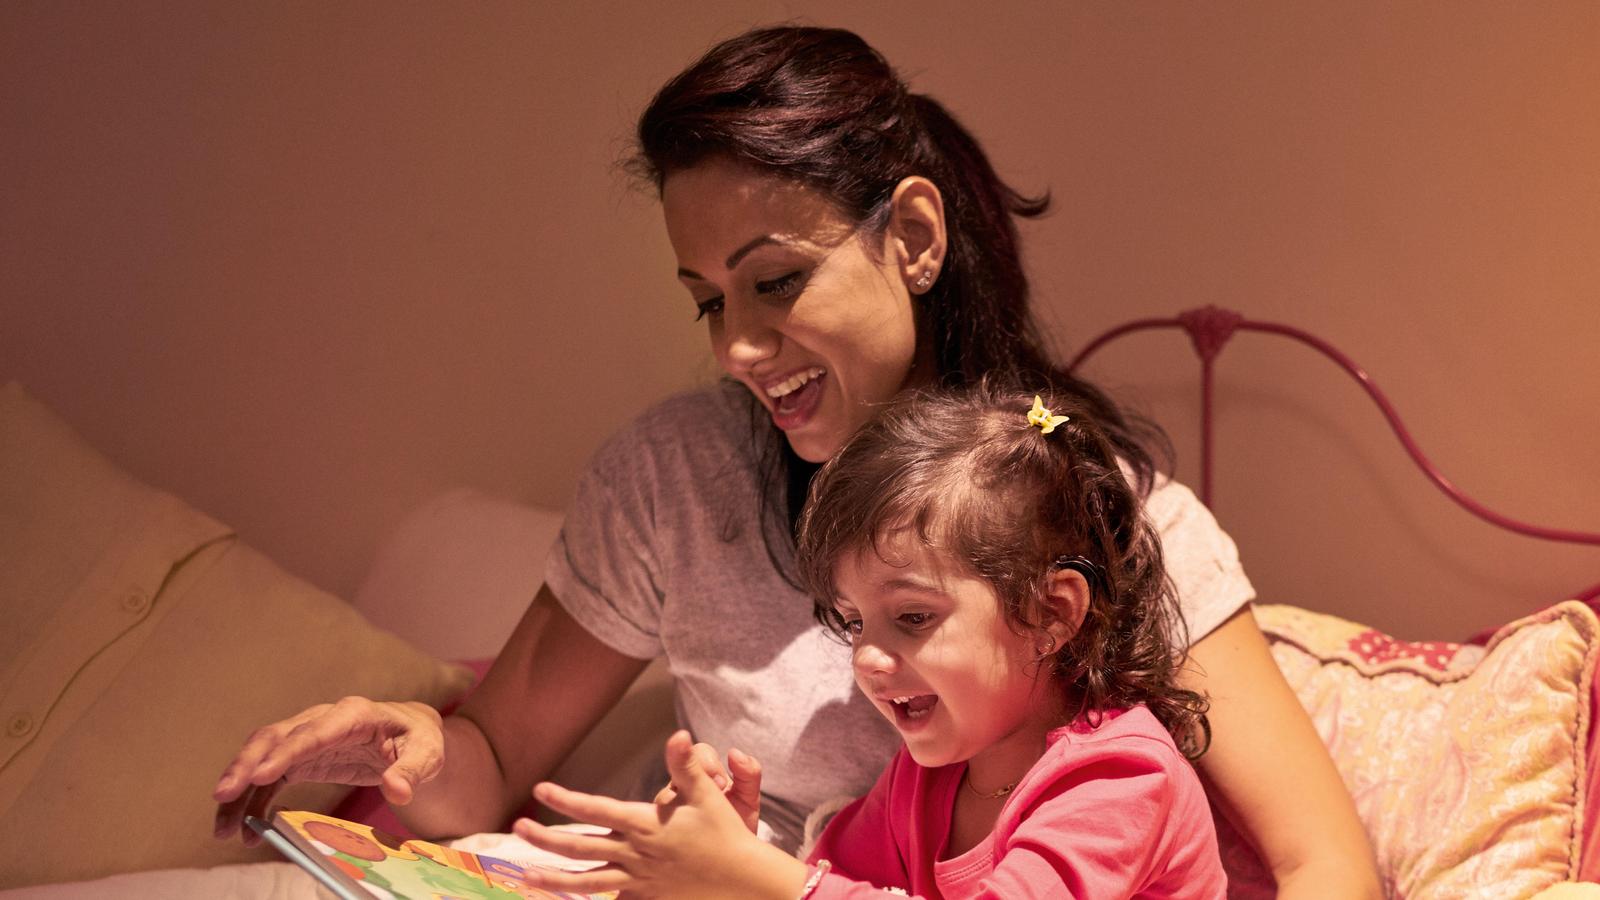 Een kind dat een implantaat heeft luistert naar haar moeder die een boek voorleest